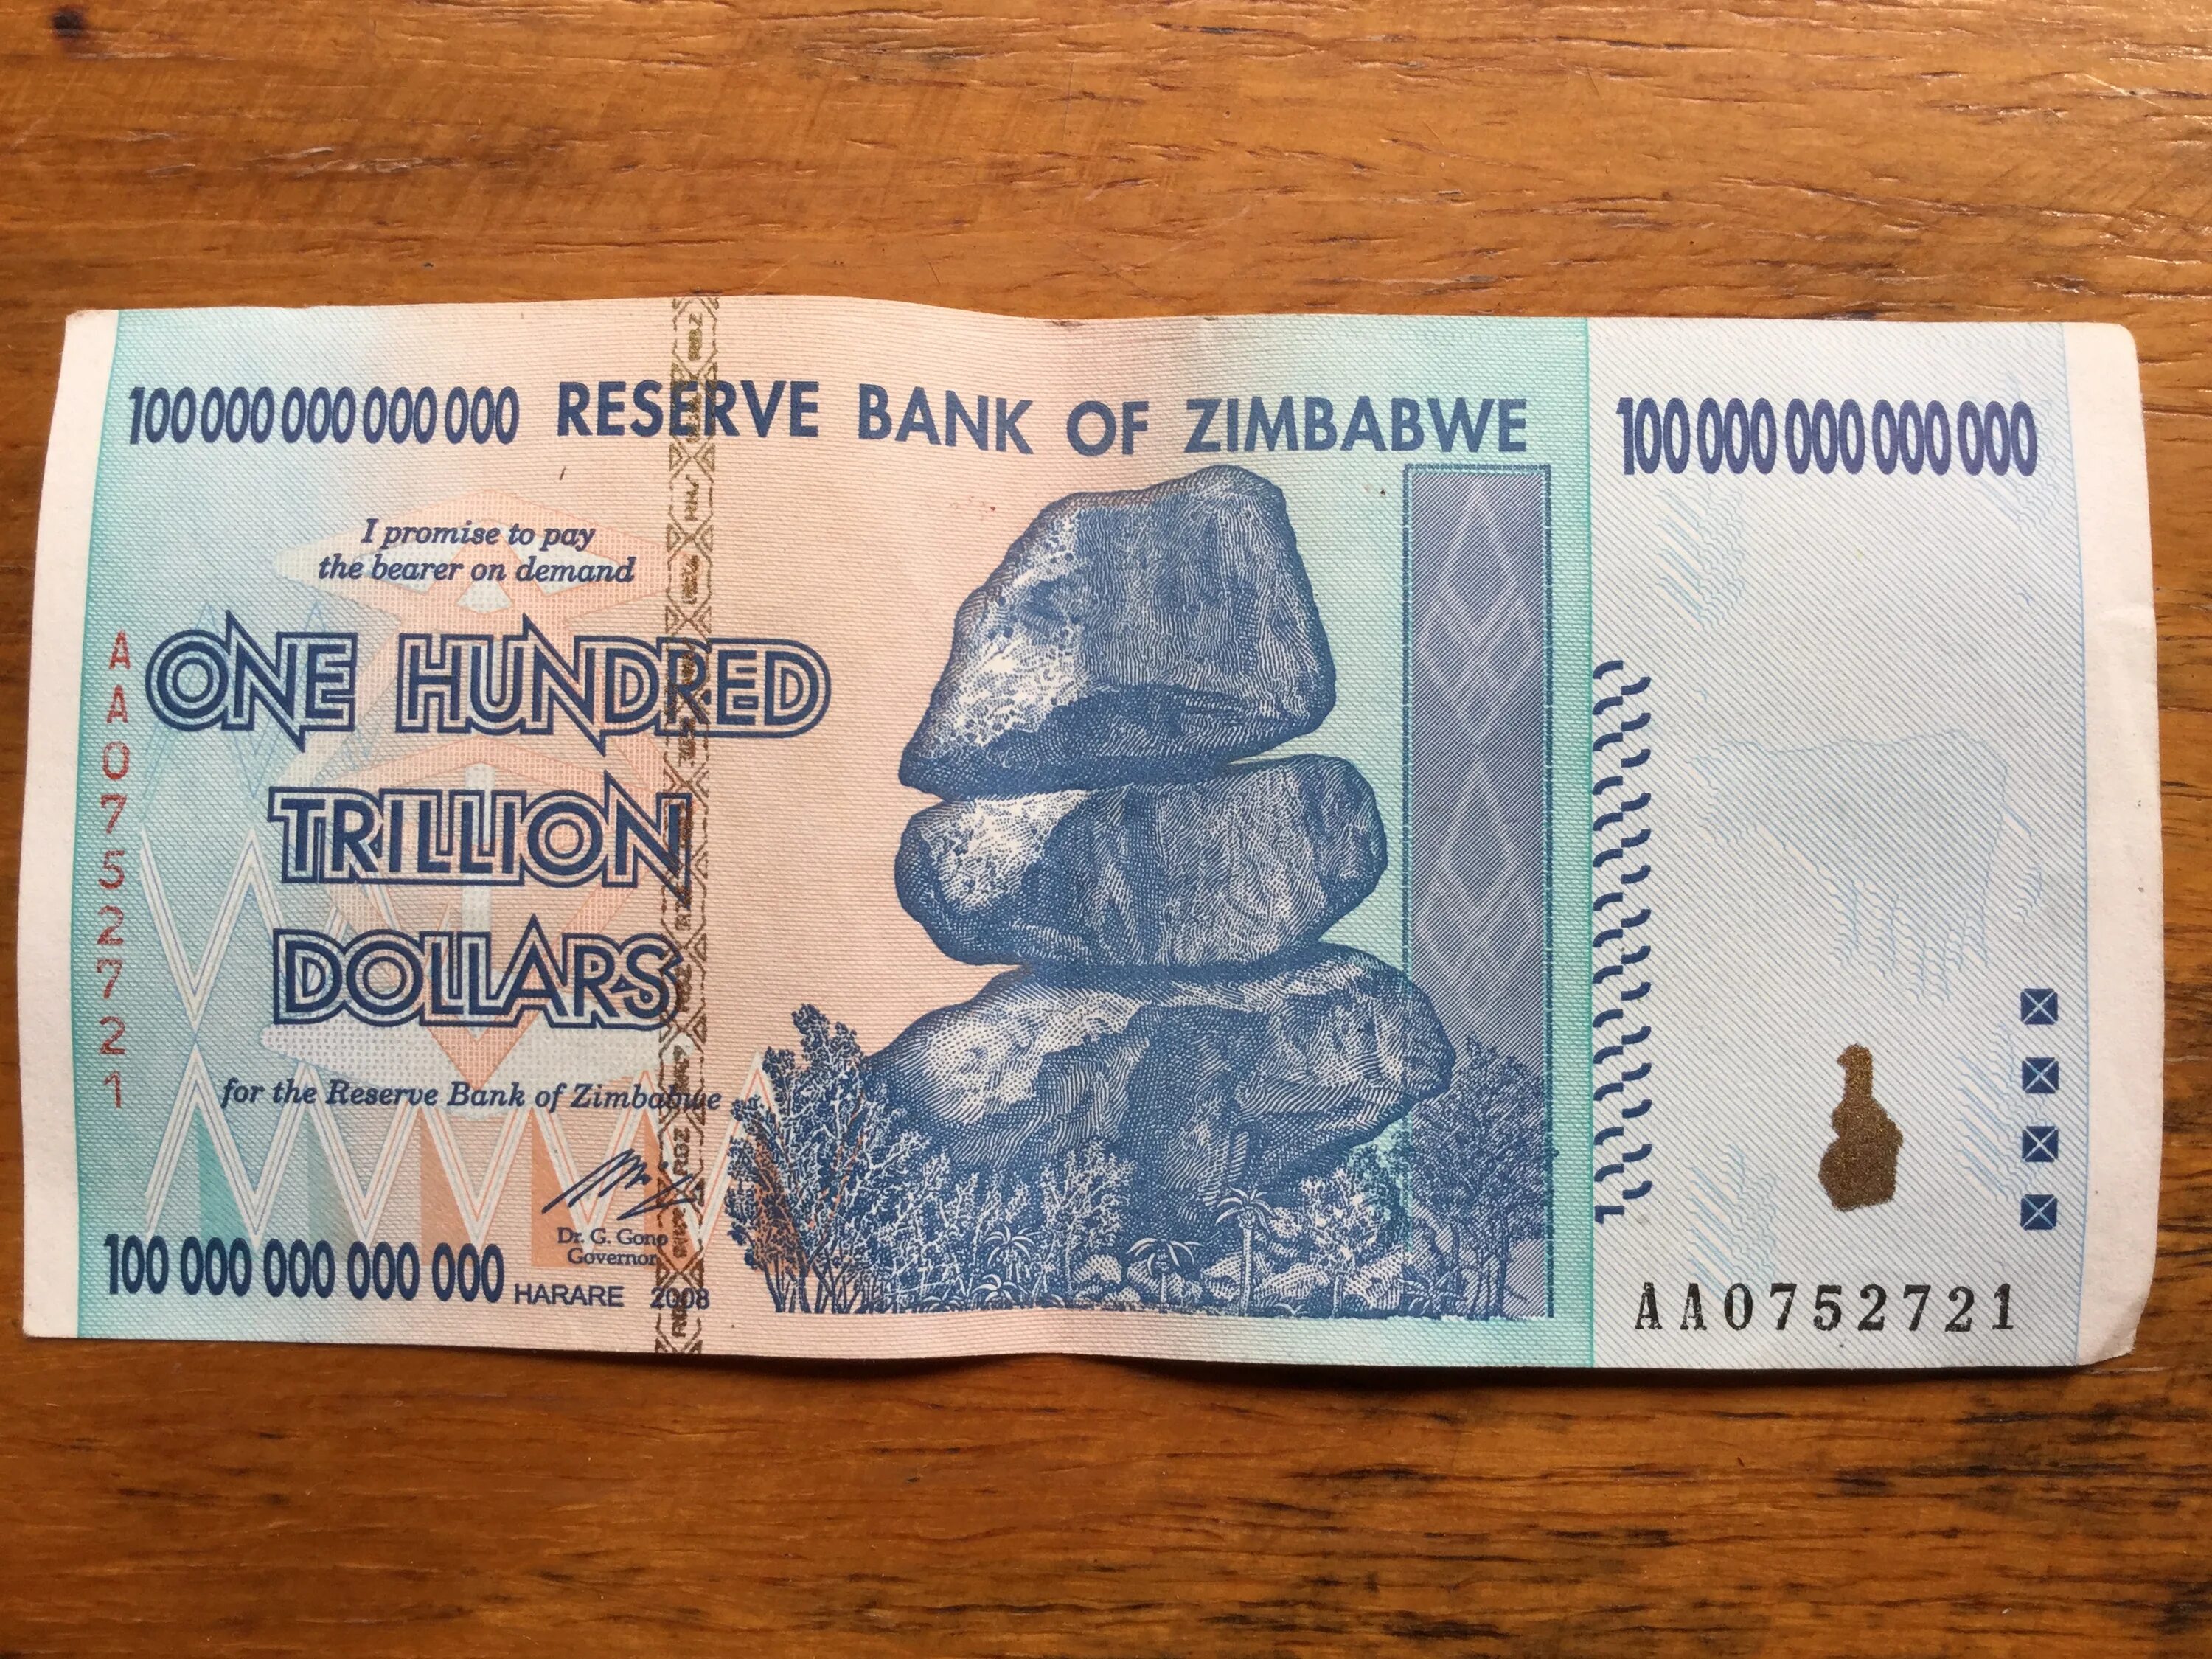 10000000000000 денег. Купюра 100 триллионов долларов Зимбабве. Триллион долларов Зимбабве банкноты. Зимбабве купюра 100 триллионов. Банкнота 100 миллиардов долларов Зимбабве.